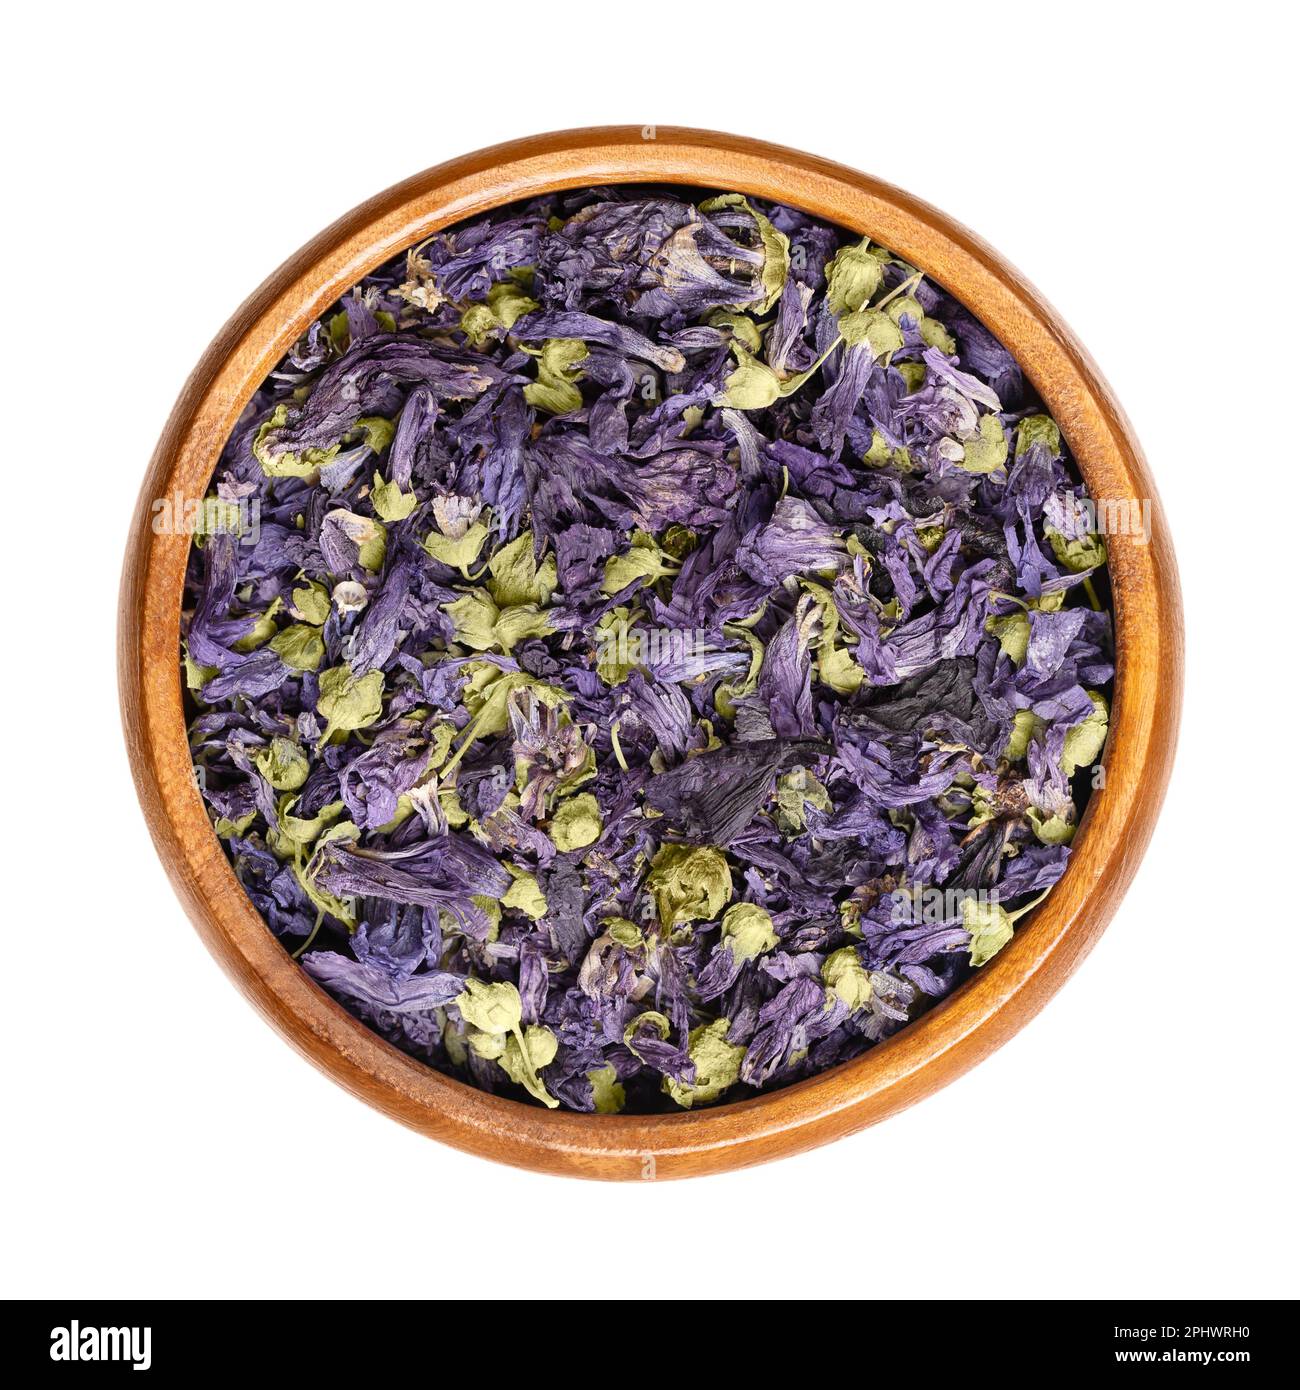 Fiori di mallow viola secco, in una ciotola di legno. Teste di fiori di Malva sylvestris, conosciuto anche come mallow comune, usato per il tè alle erbe. Foto Stock